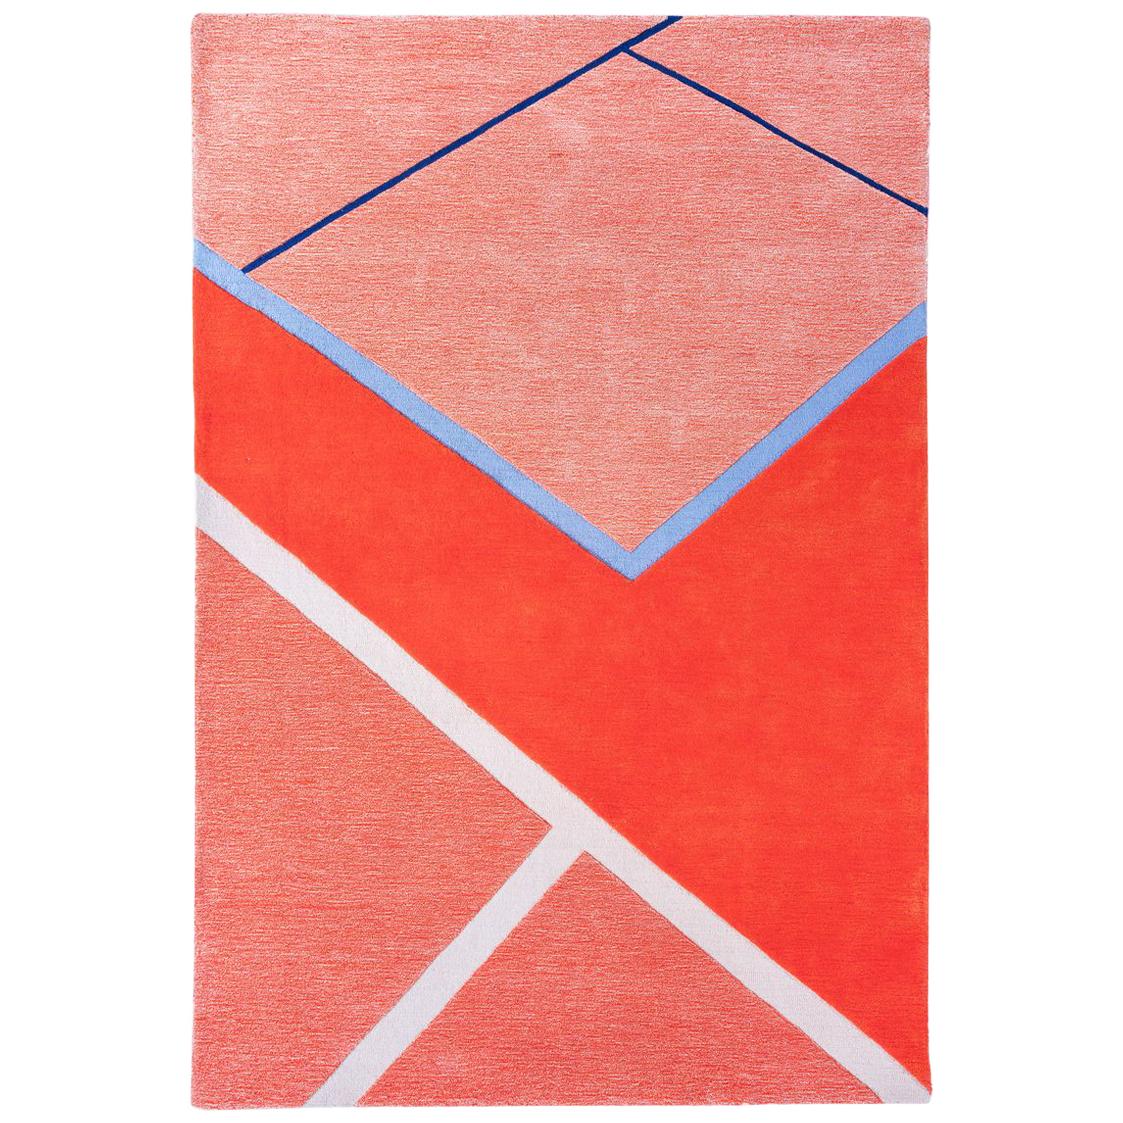 Tapis de maison « Court Series » de Pieces, tapis rouge coloré moderne touffeté à la main en vente